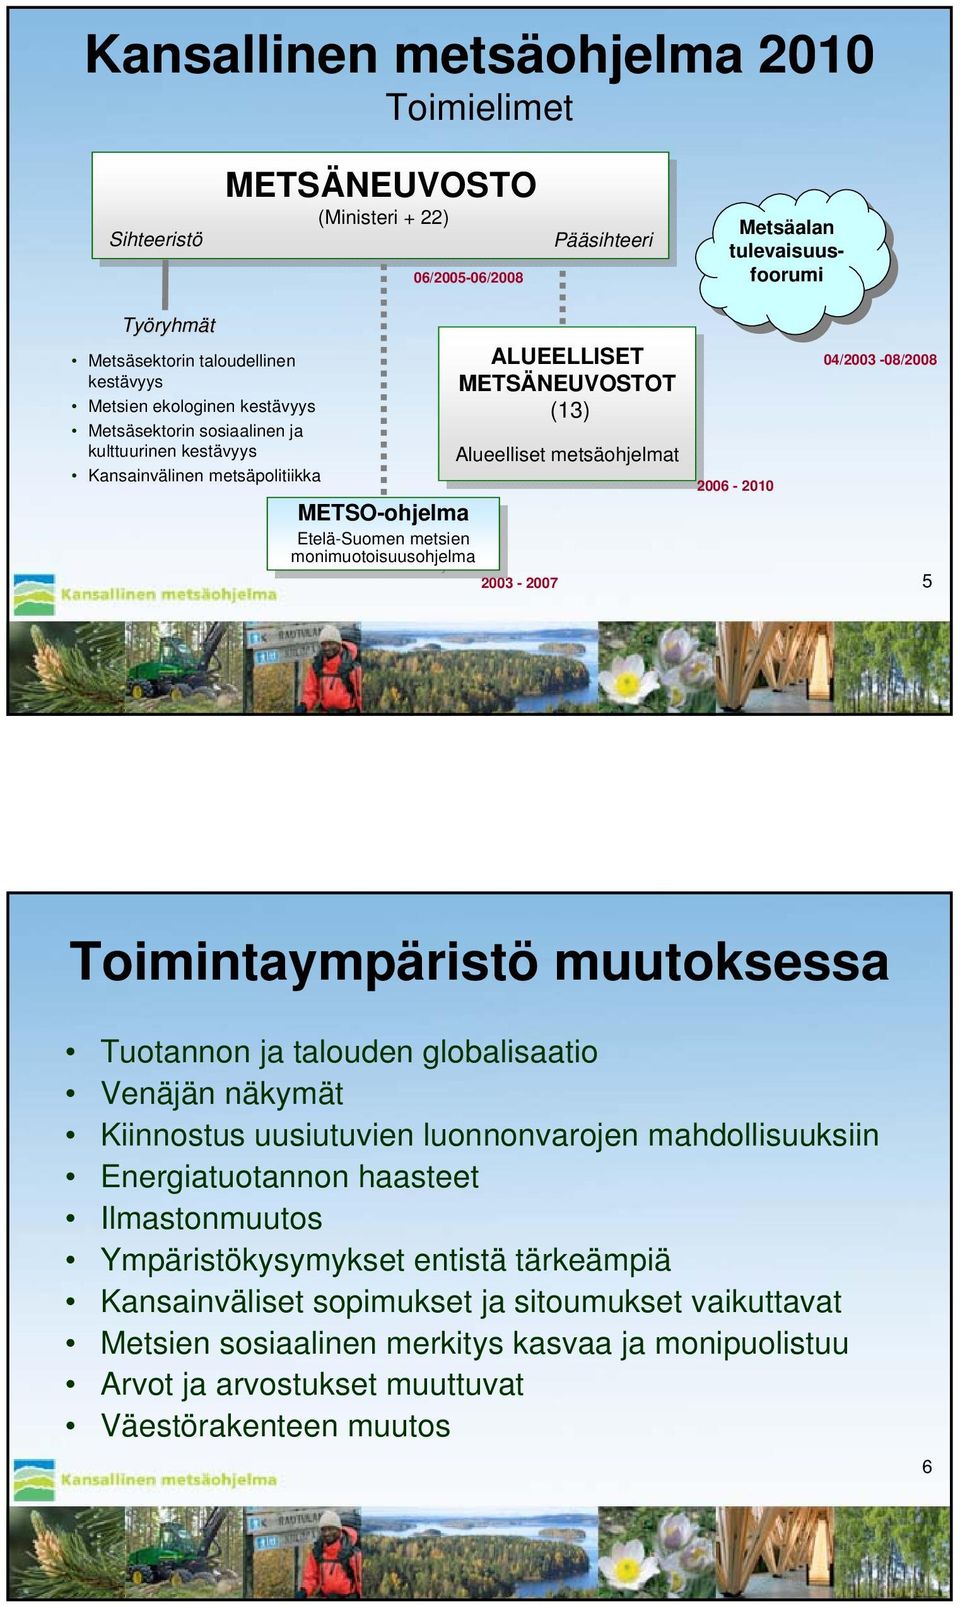 metsäohjelmat metsäohjelmat 2006-2010 METSO-ohjelma Etelä-Suomen Etelä-Suomen metsien metsien monimuotoisuusohjelma monimuotoisuusohjelma 2003-2007 04/2003-08/2008 5 Toimintaympäristö muutoksessa